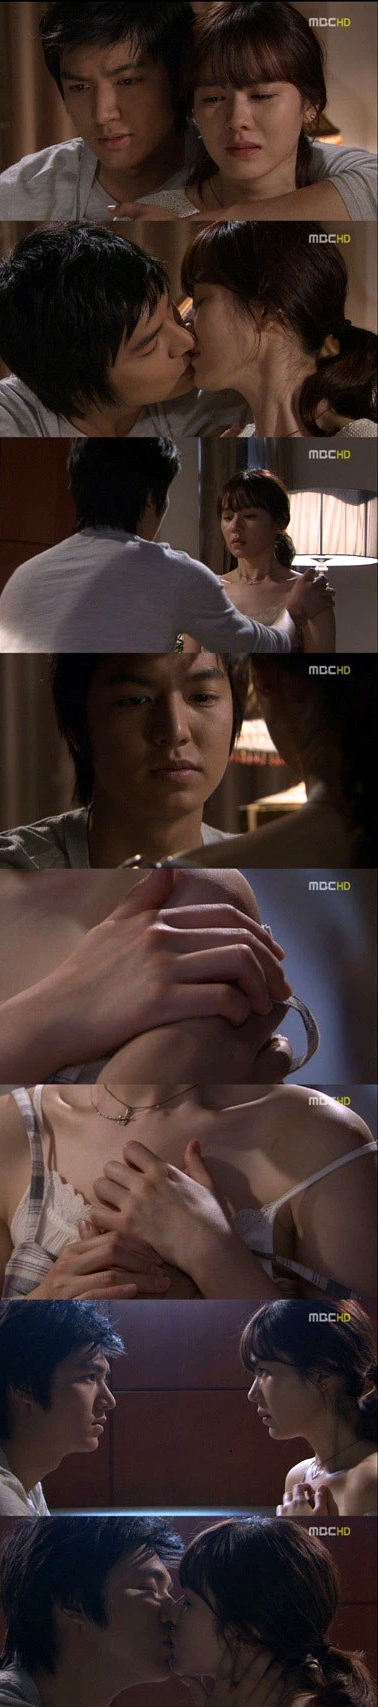 Bộ ảnh Son Ye Jin và Lee Min Ho ôm ấp cực tình bất ngờ hot trở lại sau 11 năm, fan choáng nặng vì tập cuối có tận 3 cảnh nóng - Ảnh 9.